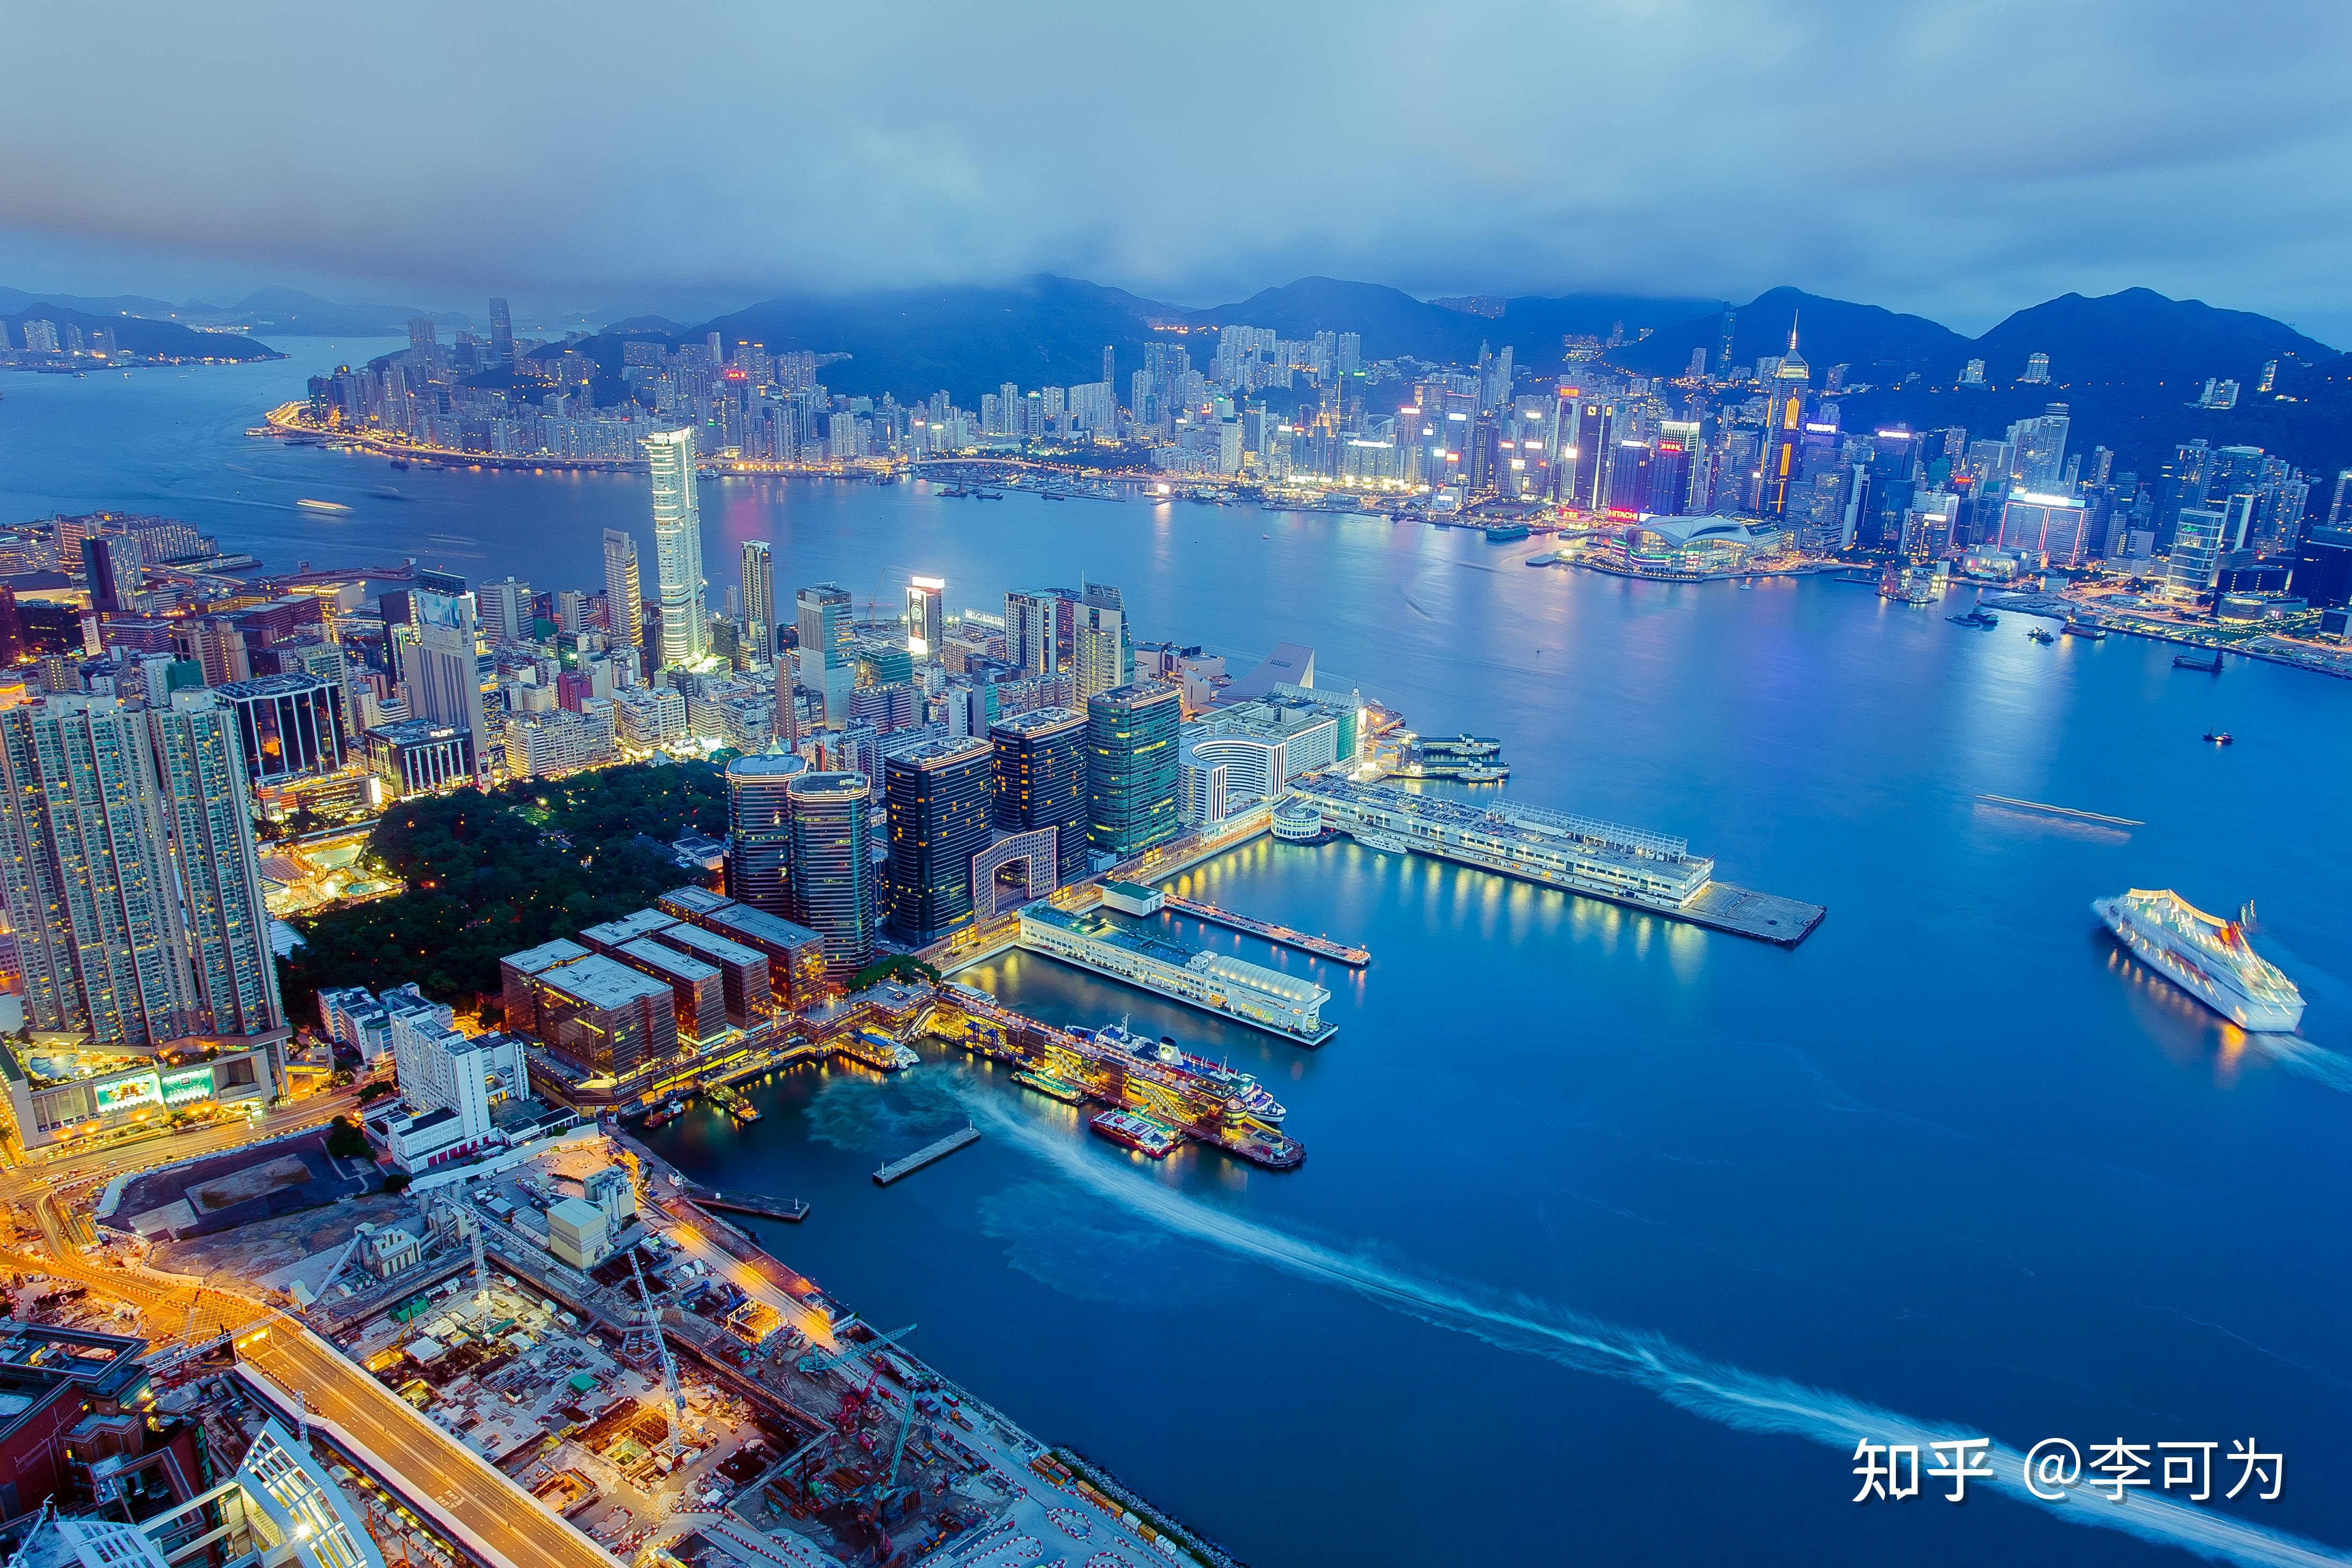 香港旅发局将首次举办跨年倒数演唱会,全球同步直播